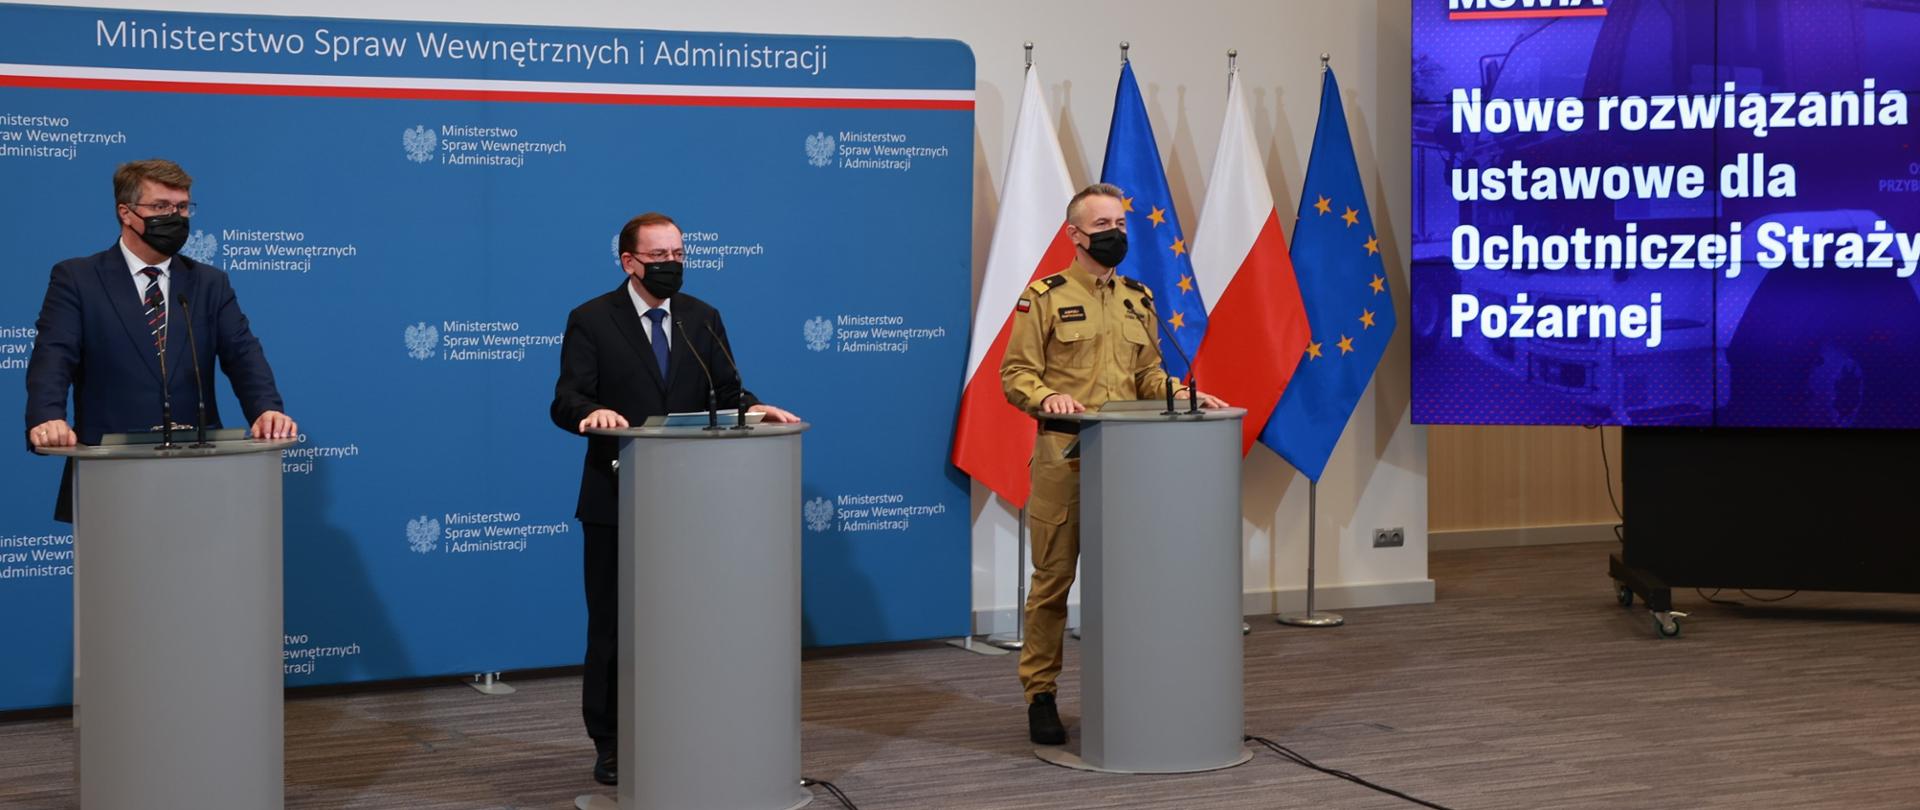 Na zdjęciu trzy osoby podczas konferencji prasowej stoją przy mównicach. W tle flagi Polski i UE oraz ścianka MSWiA